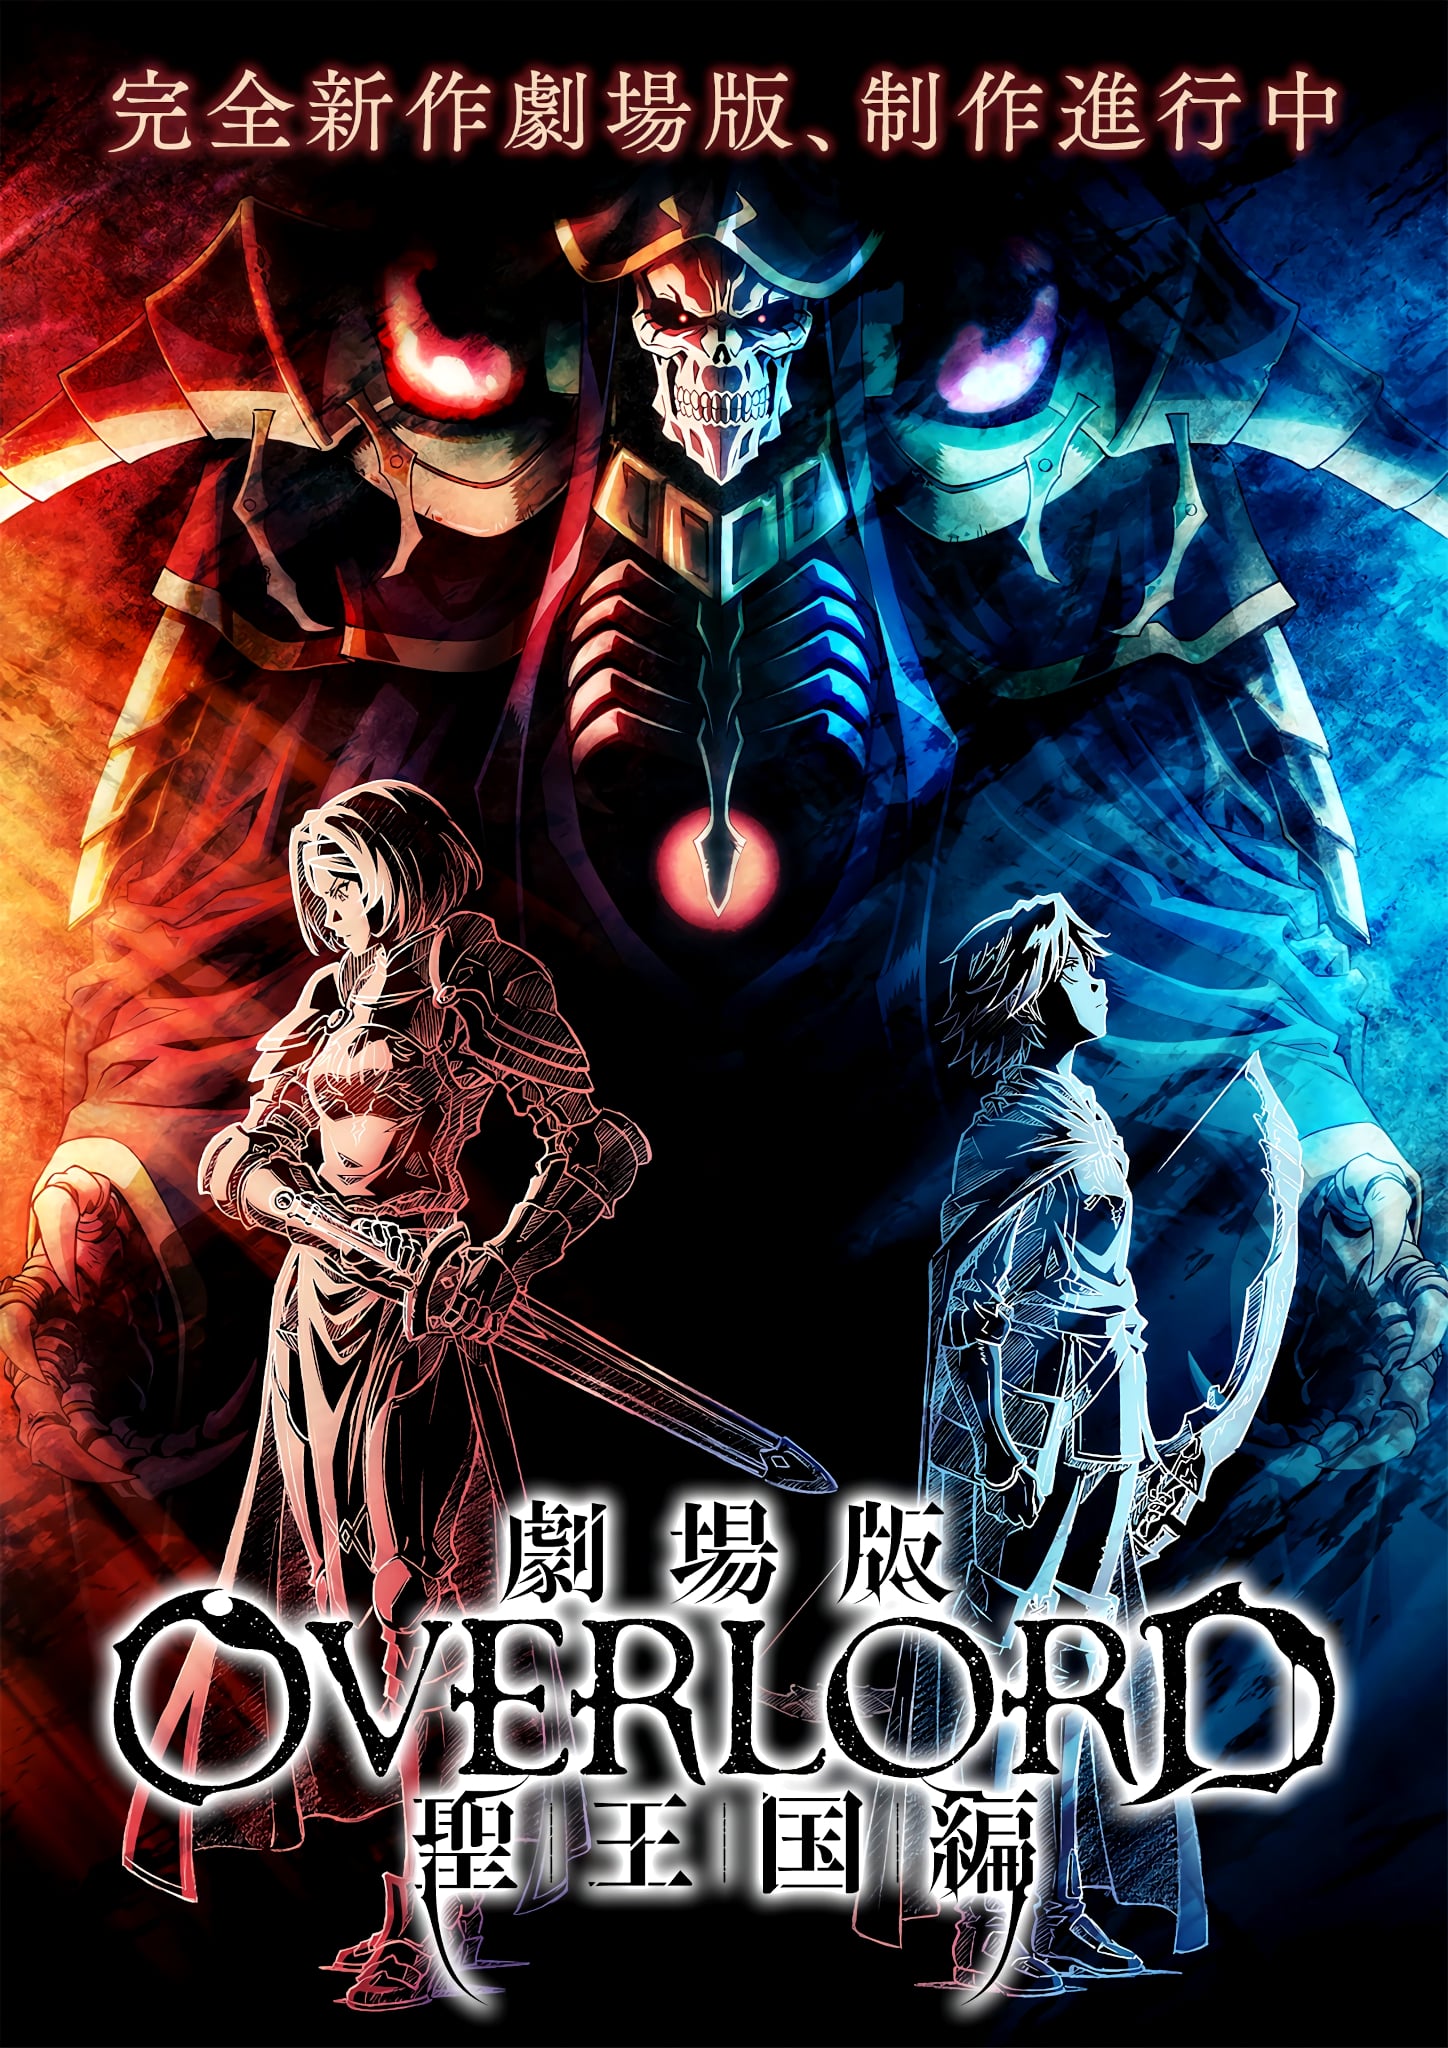 Premier visuel pour le film Overlord : The Holy Kingdom